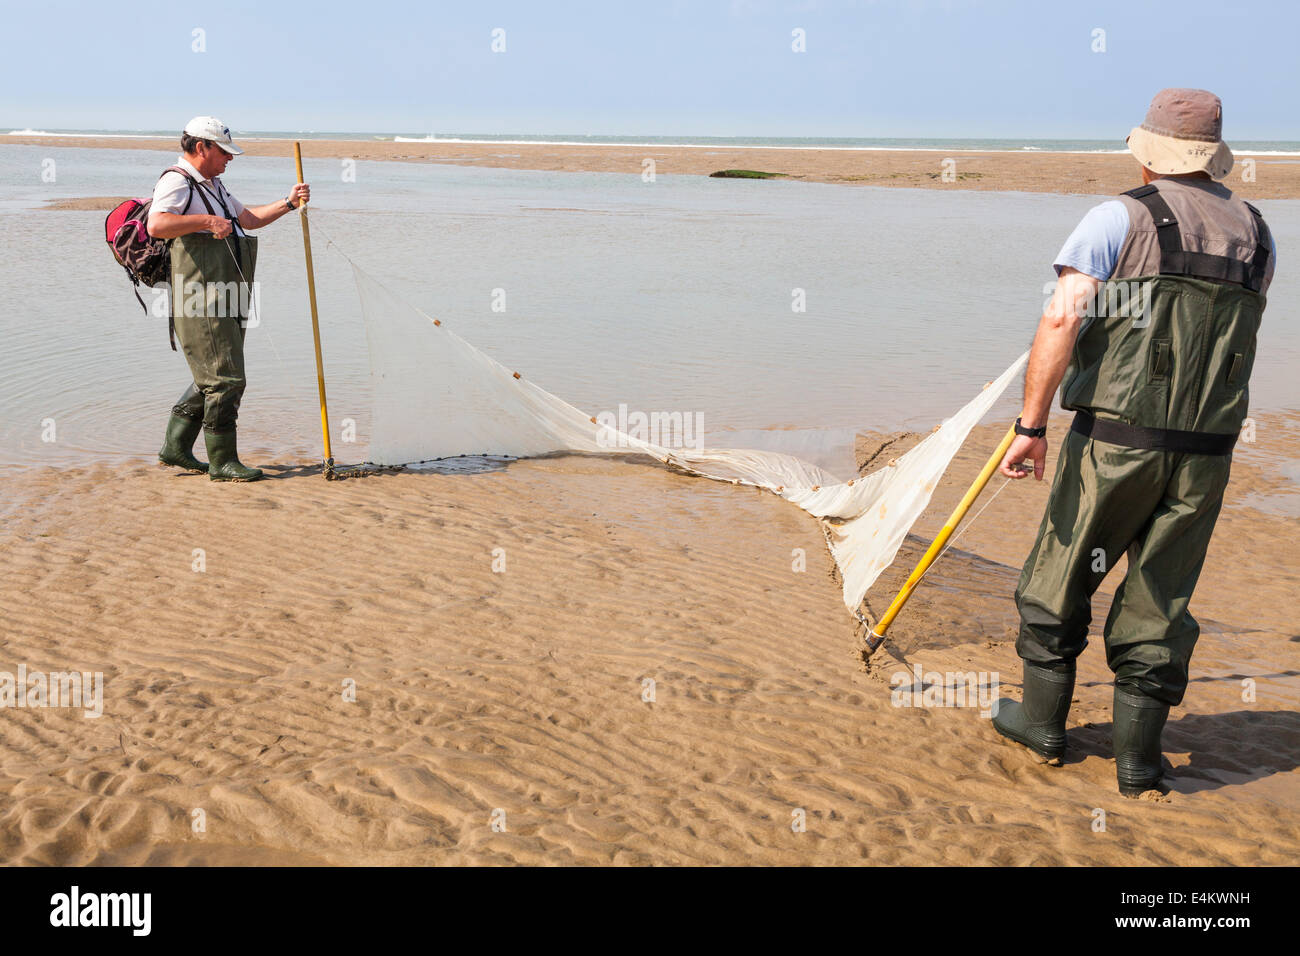 Zwei Fischer ziehen ihre Schleppnetz auf den Strand, wenn Schleppnetzfischerei für Fische in einem Pool von der zurückweichenden Flut verlassen. Stockfoto